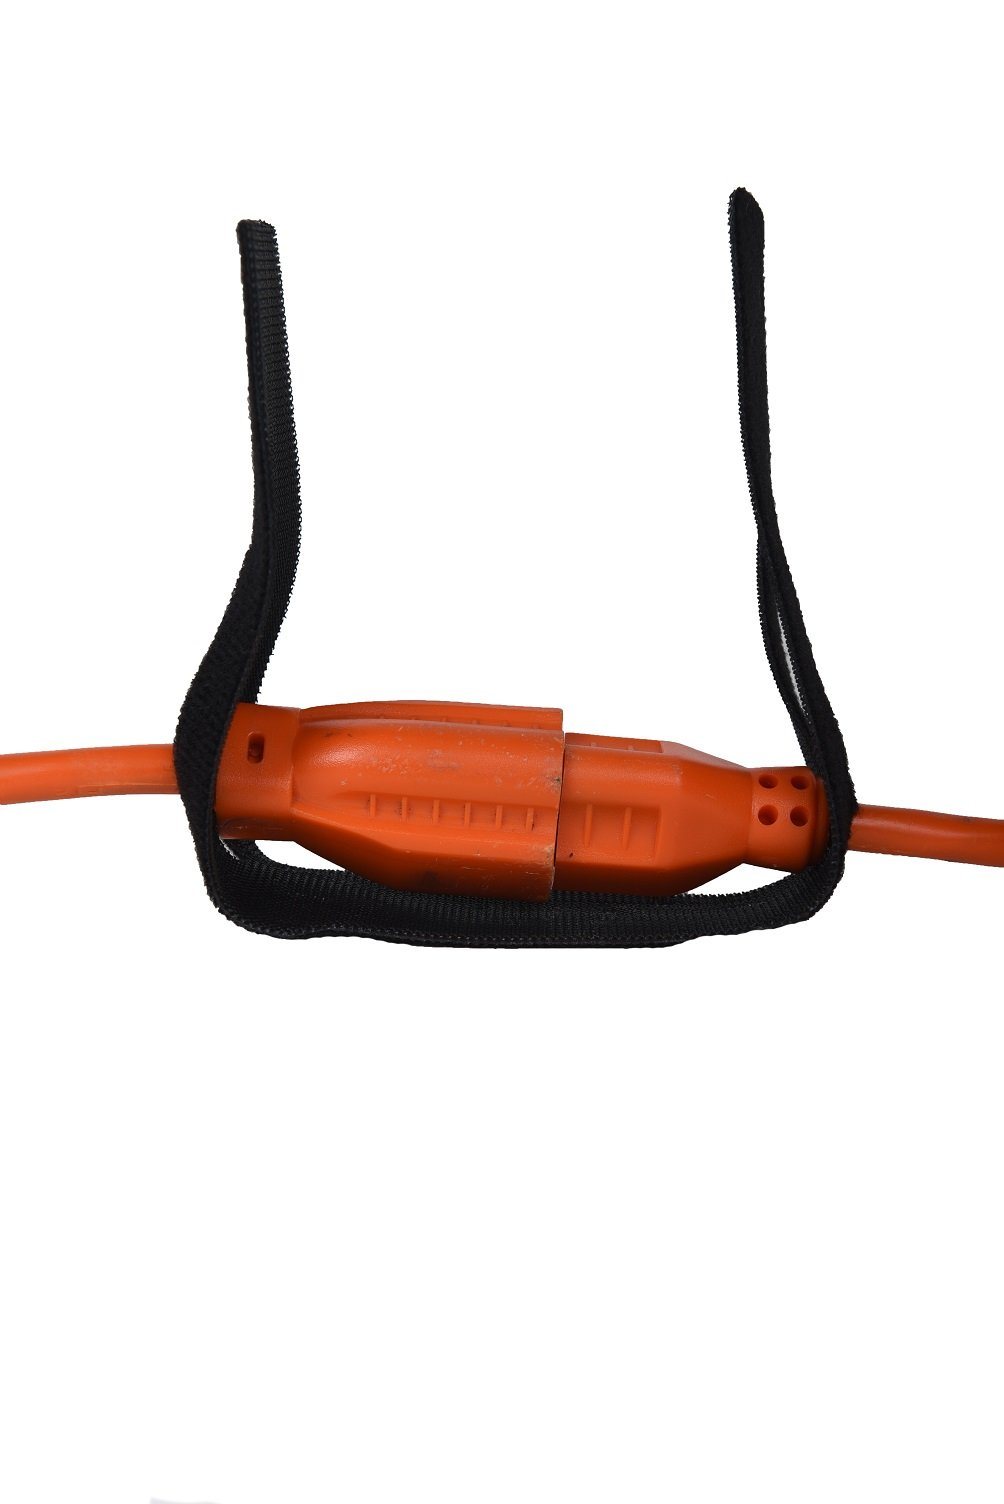 Custom Printed Cable Ties - Fasteners, Zip Ties - JW Products